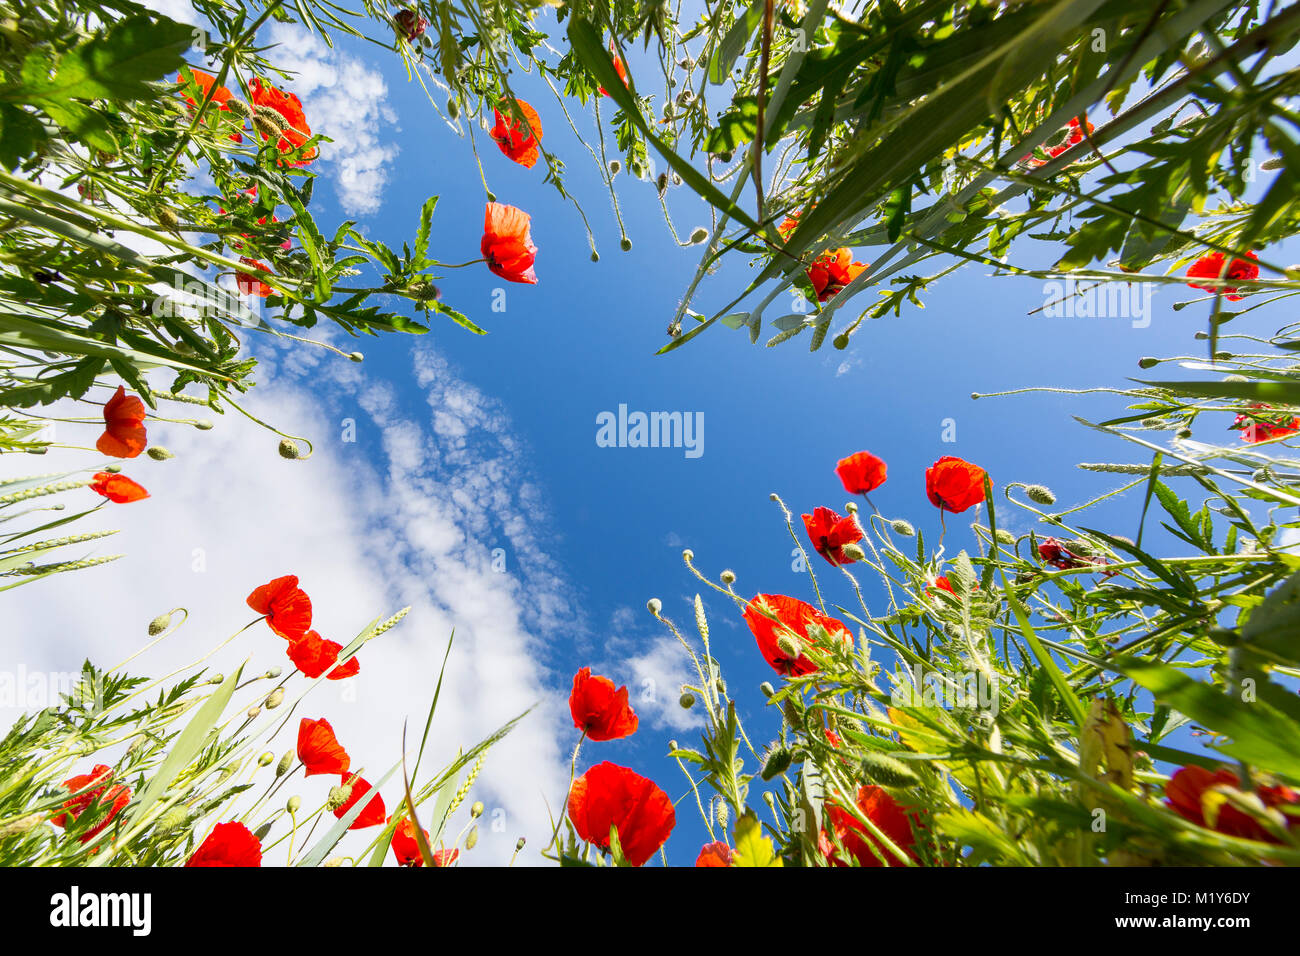 Faible angle de vue à partir d'un champ avec la floraison le pavot (Papaver) et du blé (Triticum aestivum), Saxe, Allemagne Banque D'Images